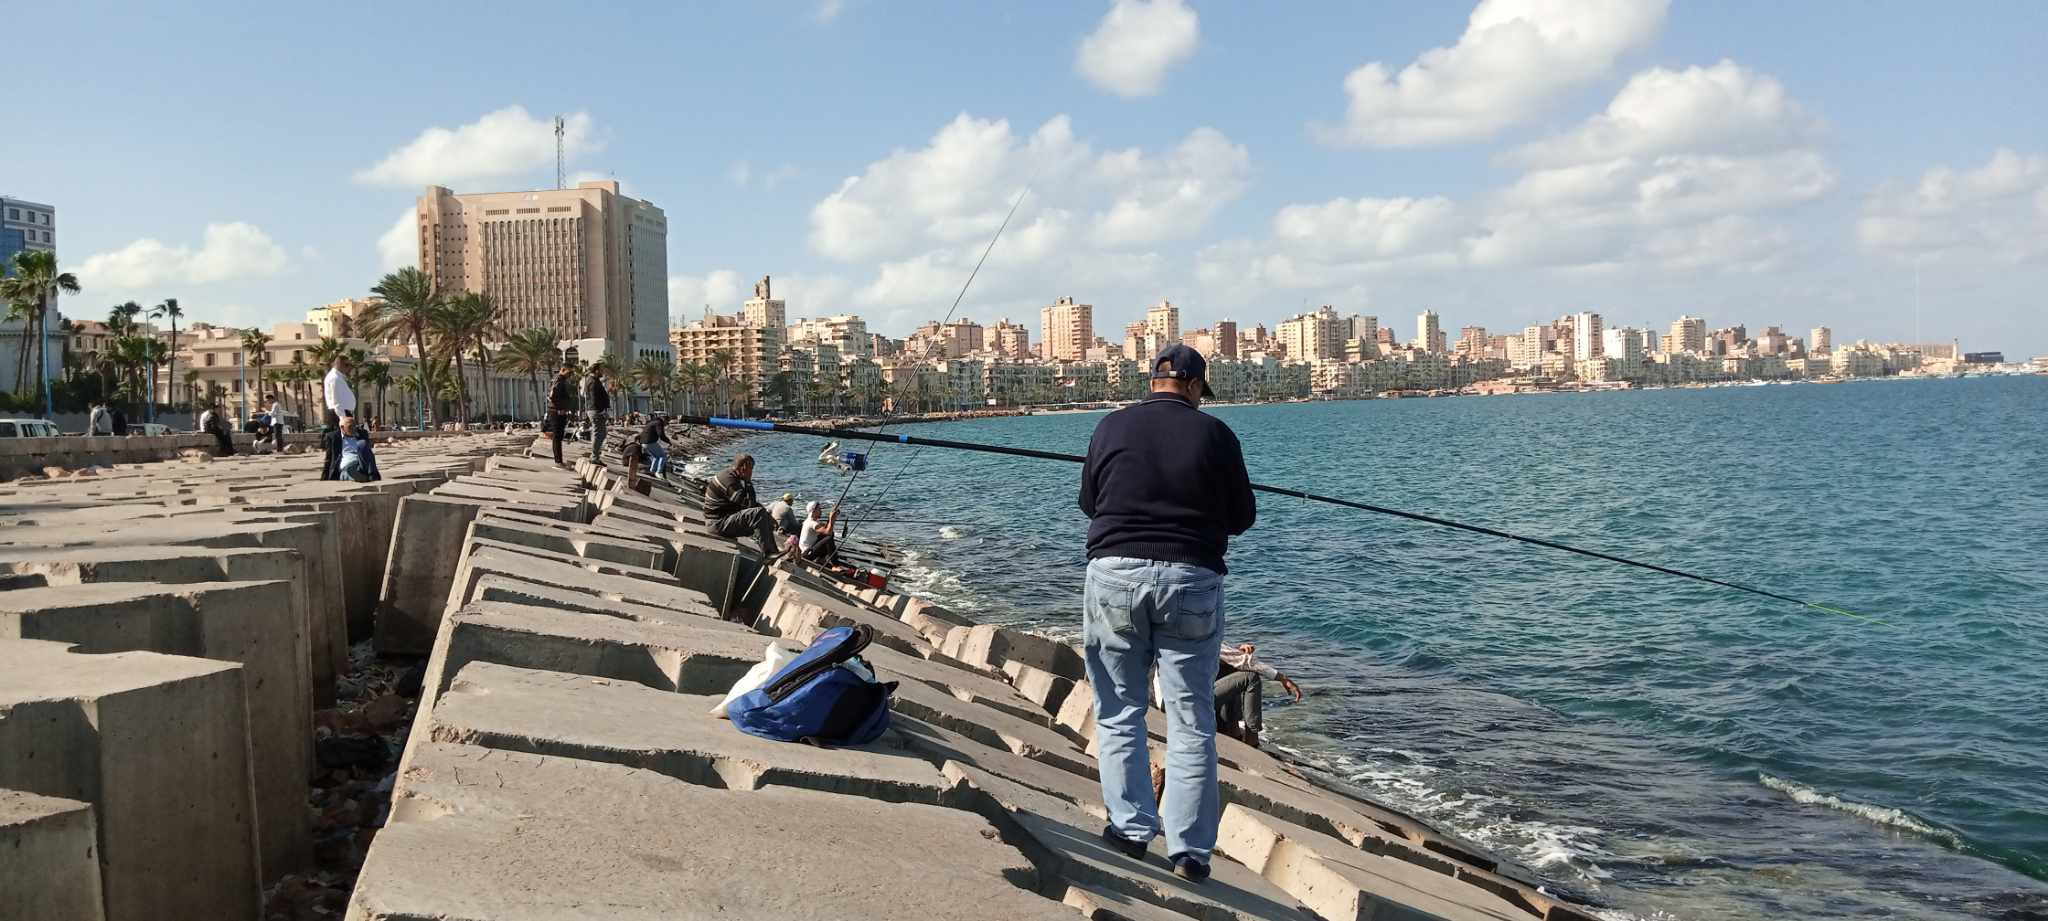 طقس دافئ وممارسة الصيد علي كورنيش الإسكندرية